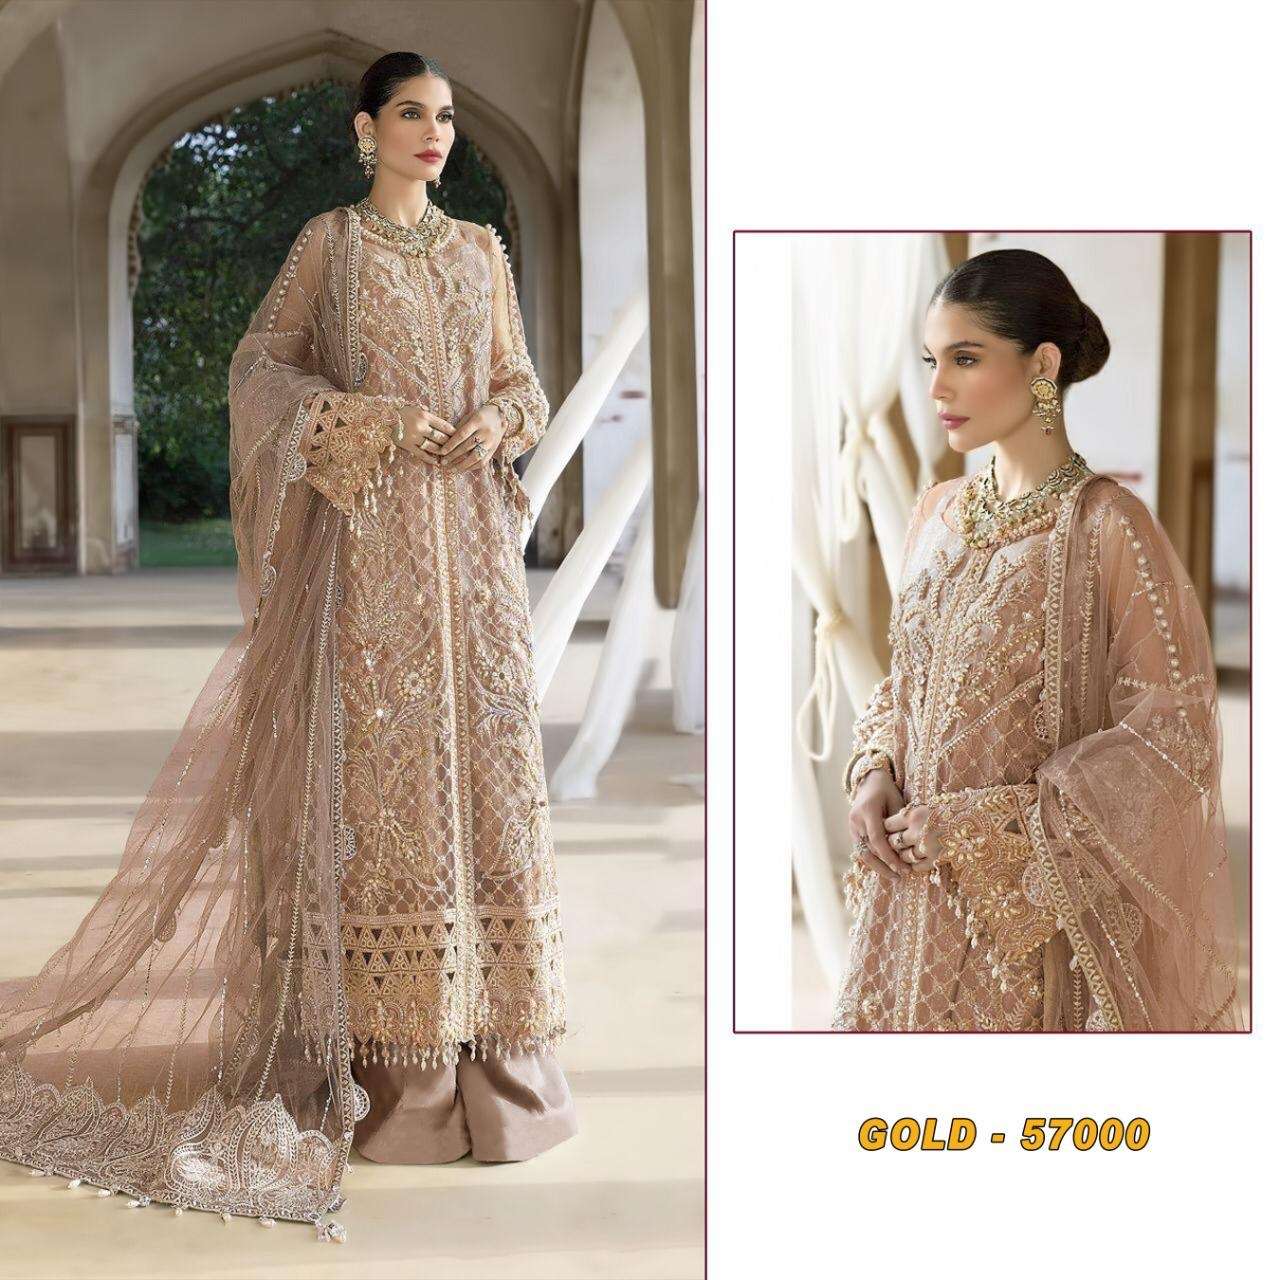 pakistani concept suits design number gold 57000 golden colour heavy embroidery pakistani concept suit collection